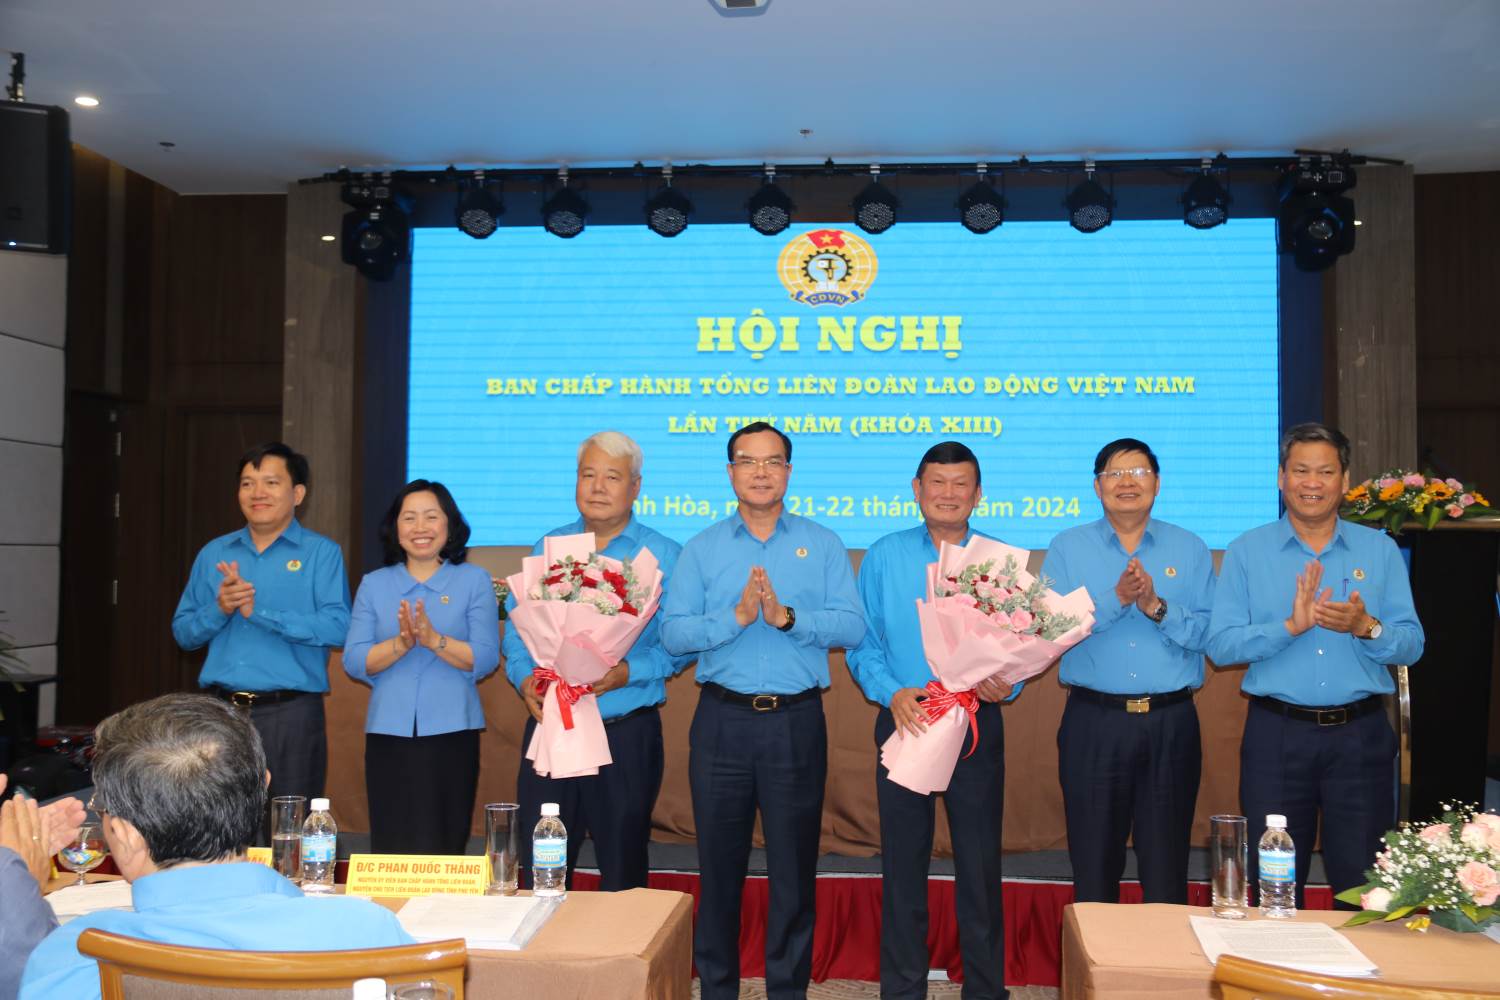 Đoàn Chủ tịch chúc mừng 2 đồng chí được bầu vào Ban Chấp hành Tổng LĐLĐ Việt Nam khóa XIII. Ảnh: P.Linh